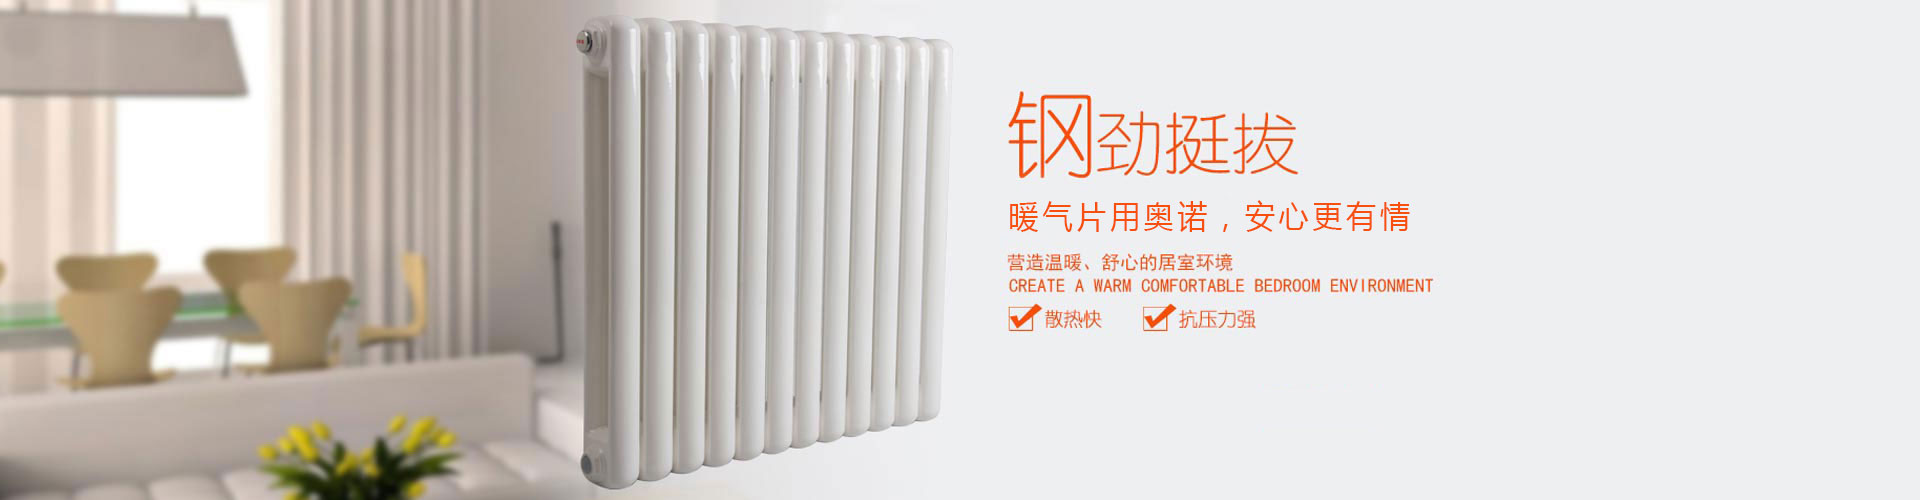 北京欧亚特暖通设备有限公司